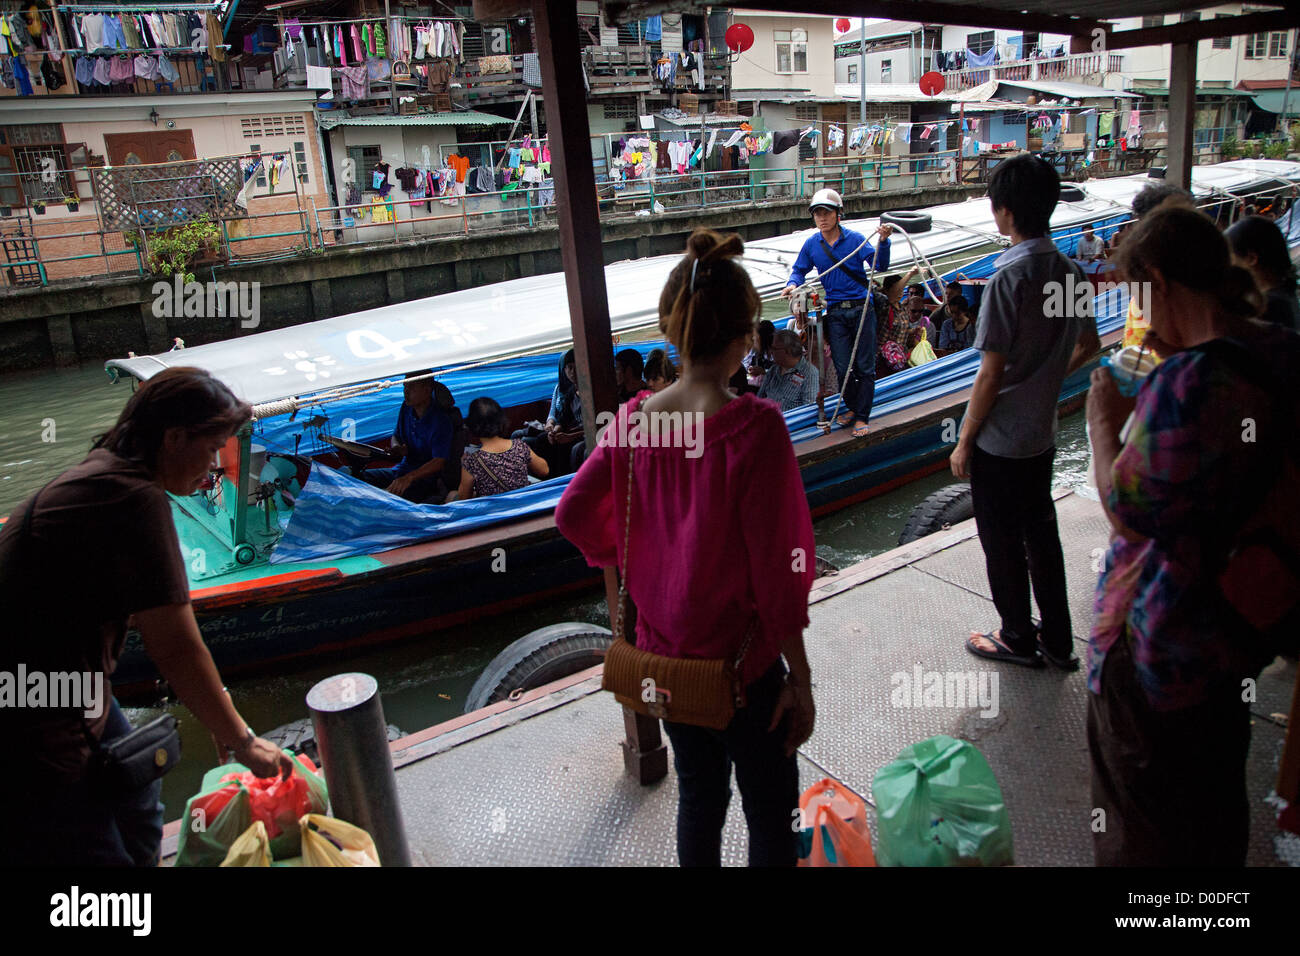 Barcas taxi o buses fluviales en un canal vinculado al río Chao Phraya el transporte público en la ciudad de Bangkok Bangkok Thailand Foto de stock